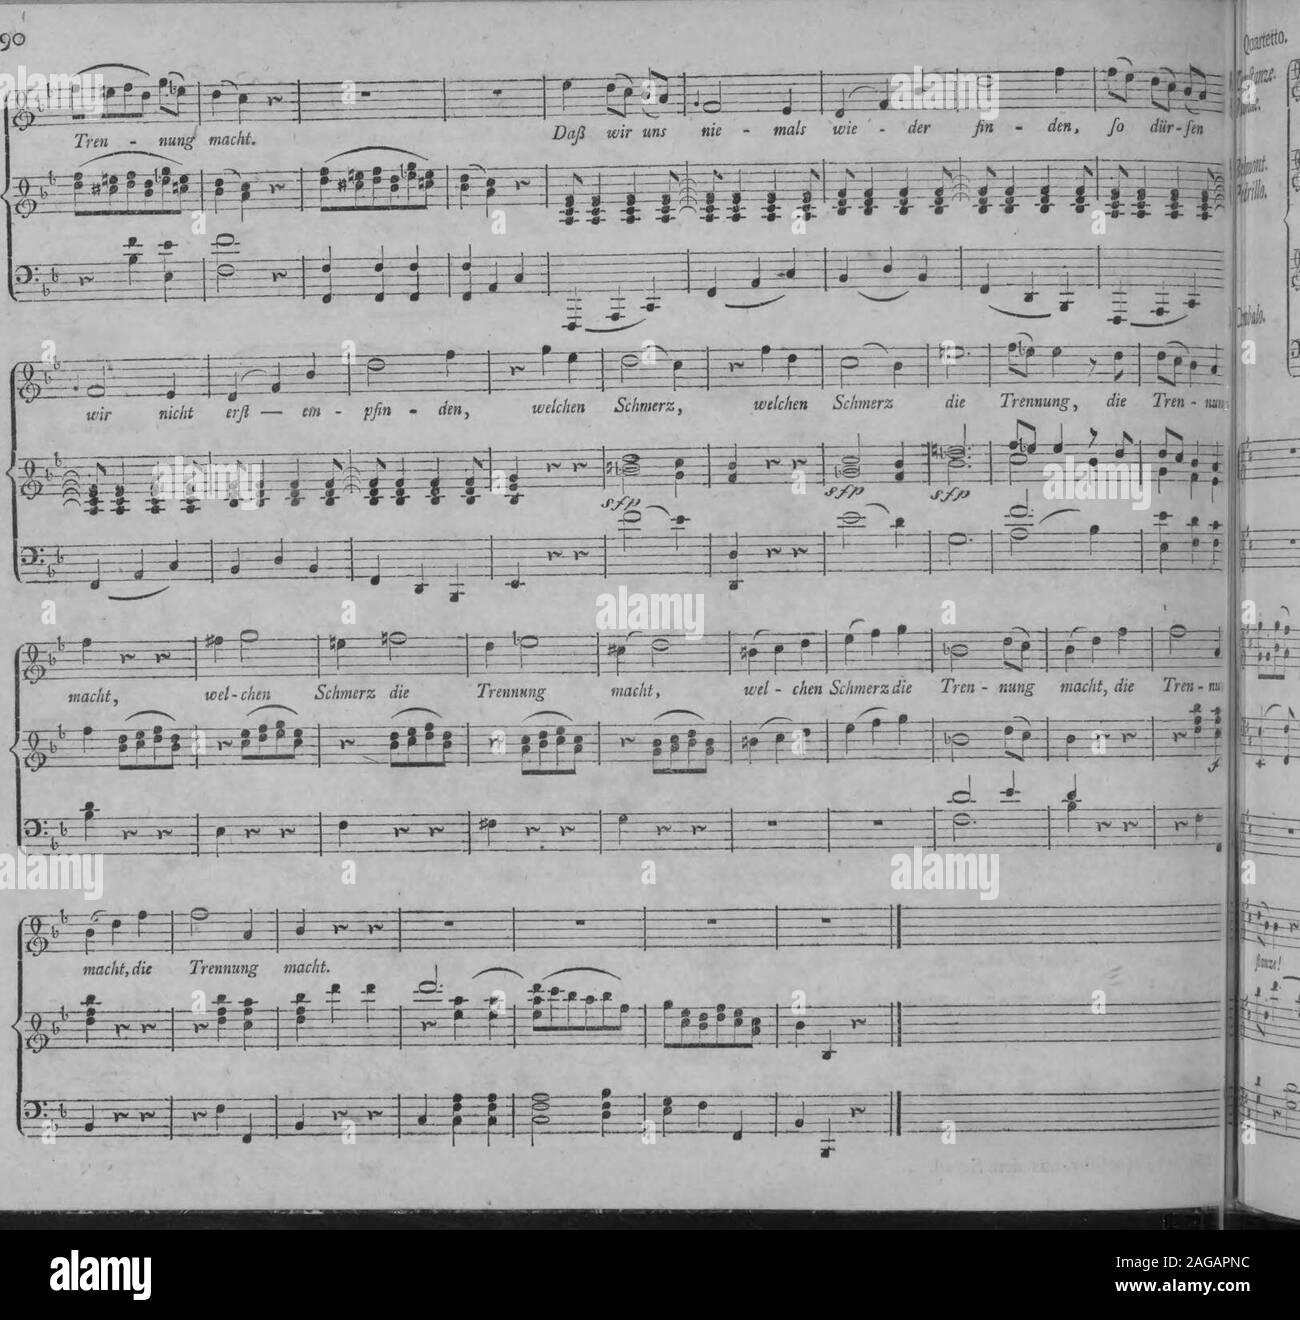 . Die Entfuhrung aus dem Serail : ein komisches Singspiel in drey Aufzugen (1796). Mozart, Entführ, aus dem Serail..  Cahalo. *?*?*+- *?*?*•*? +*?*-*- * r r + * 8Cr 2b* Stock Photo